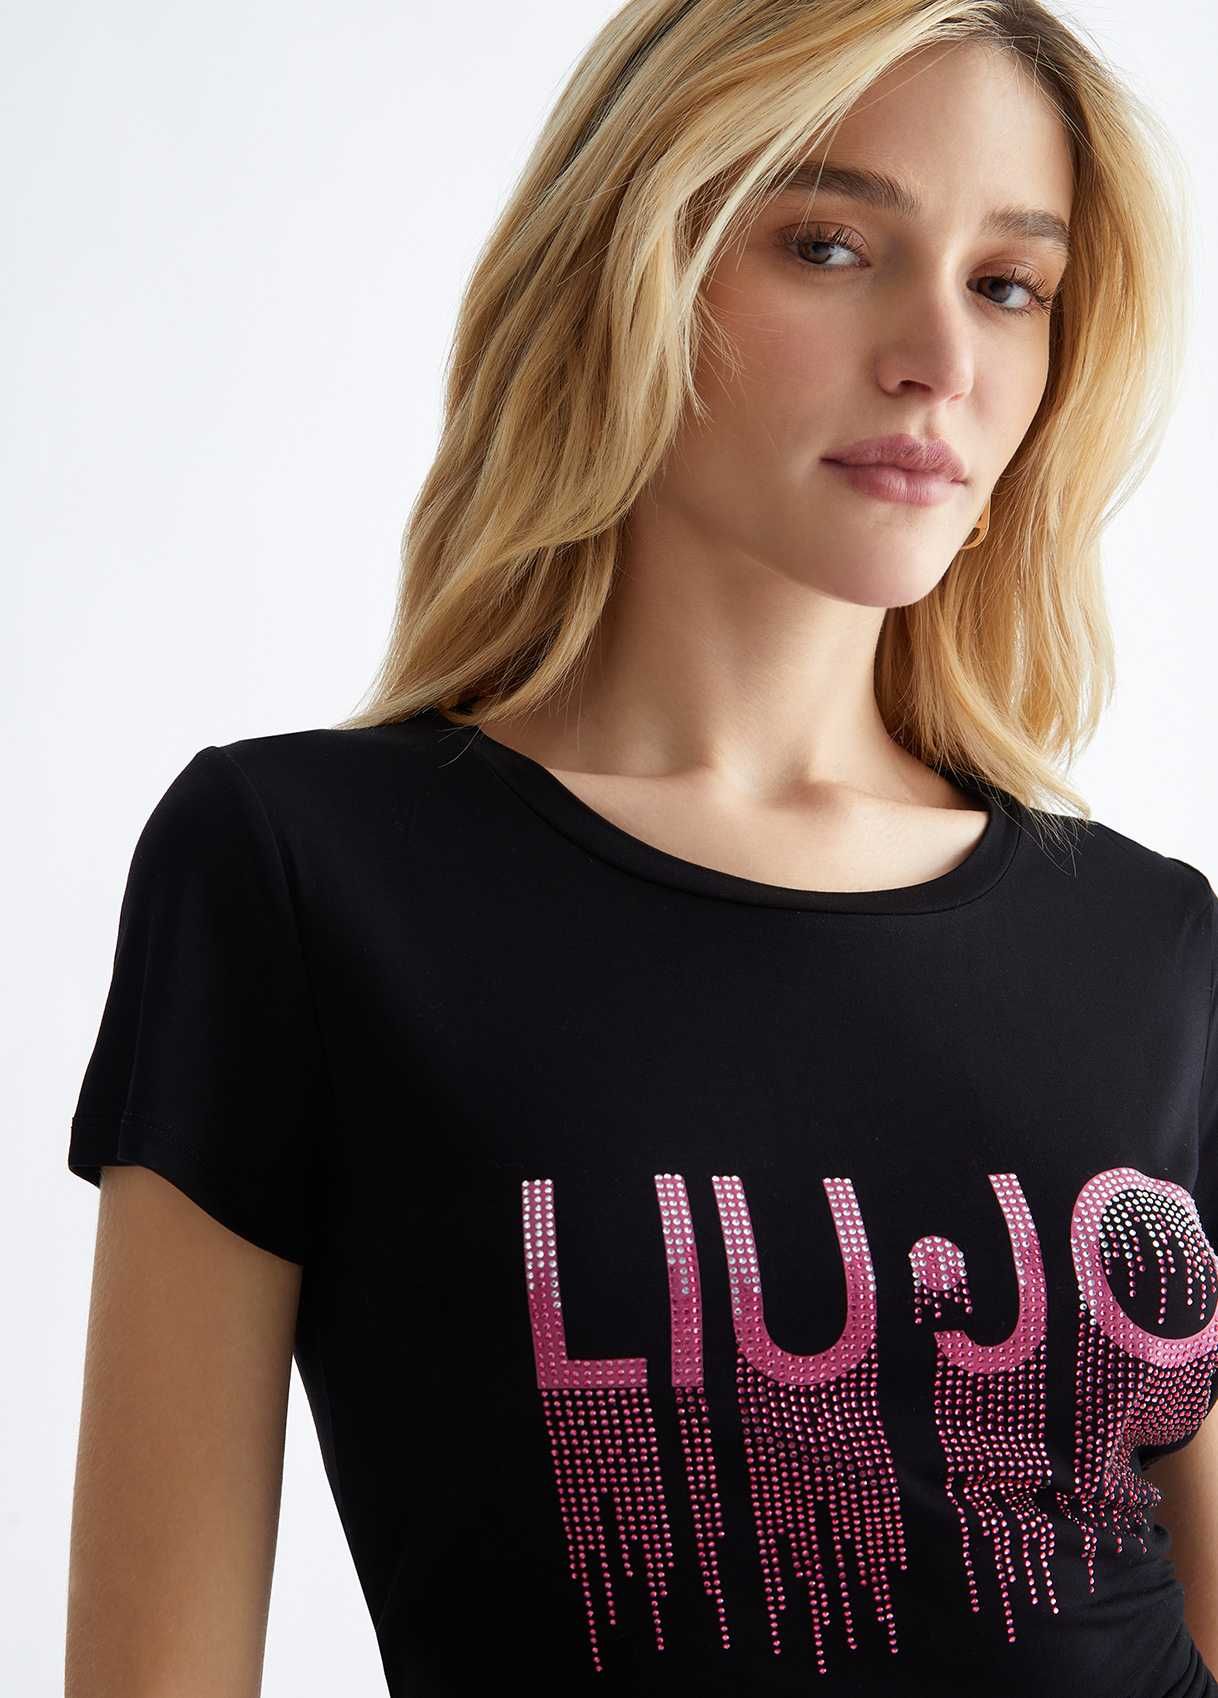 Оригинална дамска тениска, LIU JO, BLACK LOGO